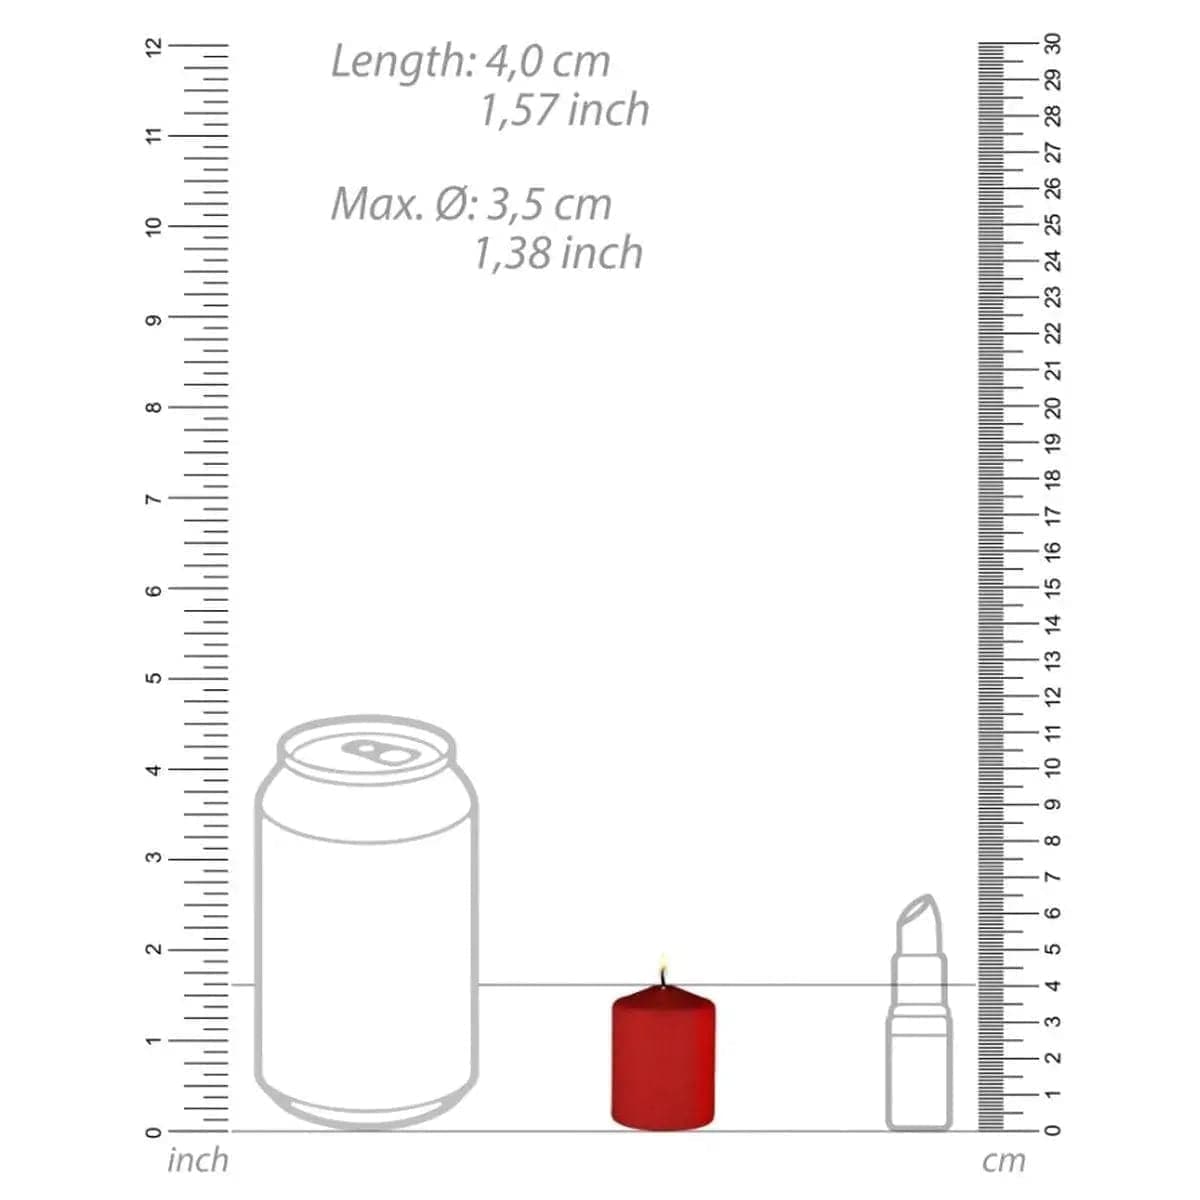 Vela de Sadomaso de Baixa Temperatura, 4 mini-velas Vermelho, 4cm Ø3.5cm - Pérola SexShop